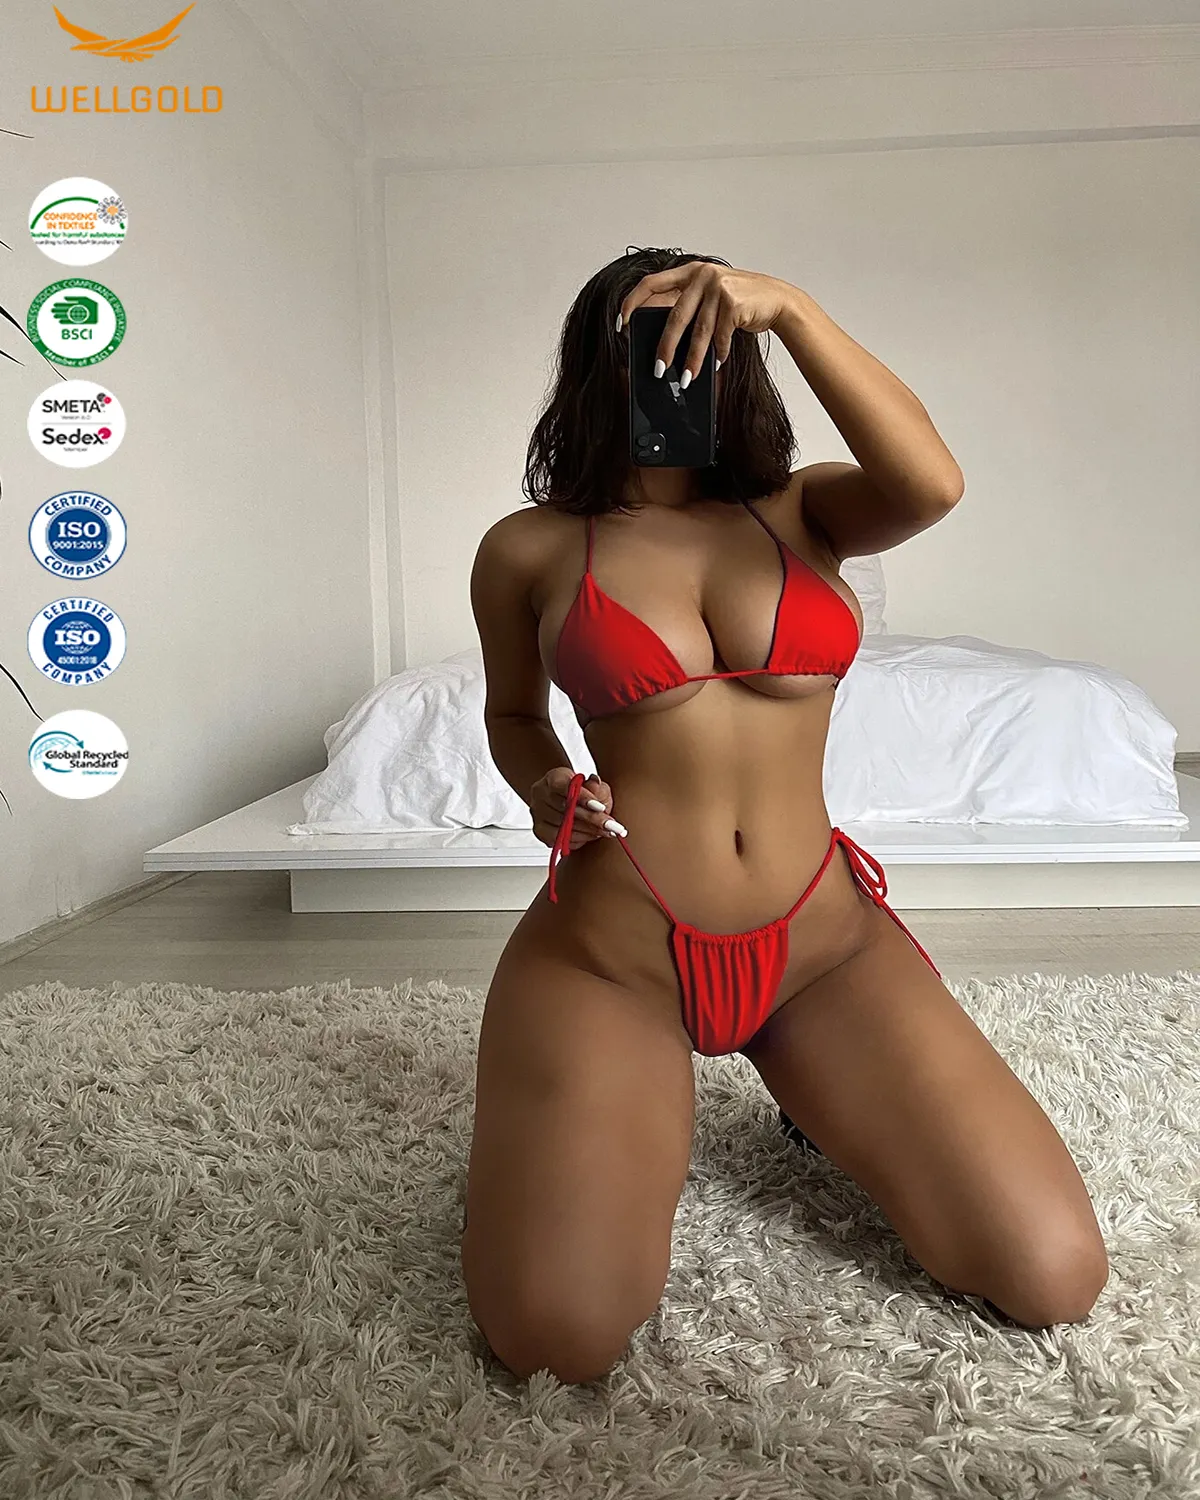 Wellgold Damen sexy rote Farbe Triangle Thong Bikini Badeanzug zweiteilige Damen Mädchen Bade bekleidung